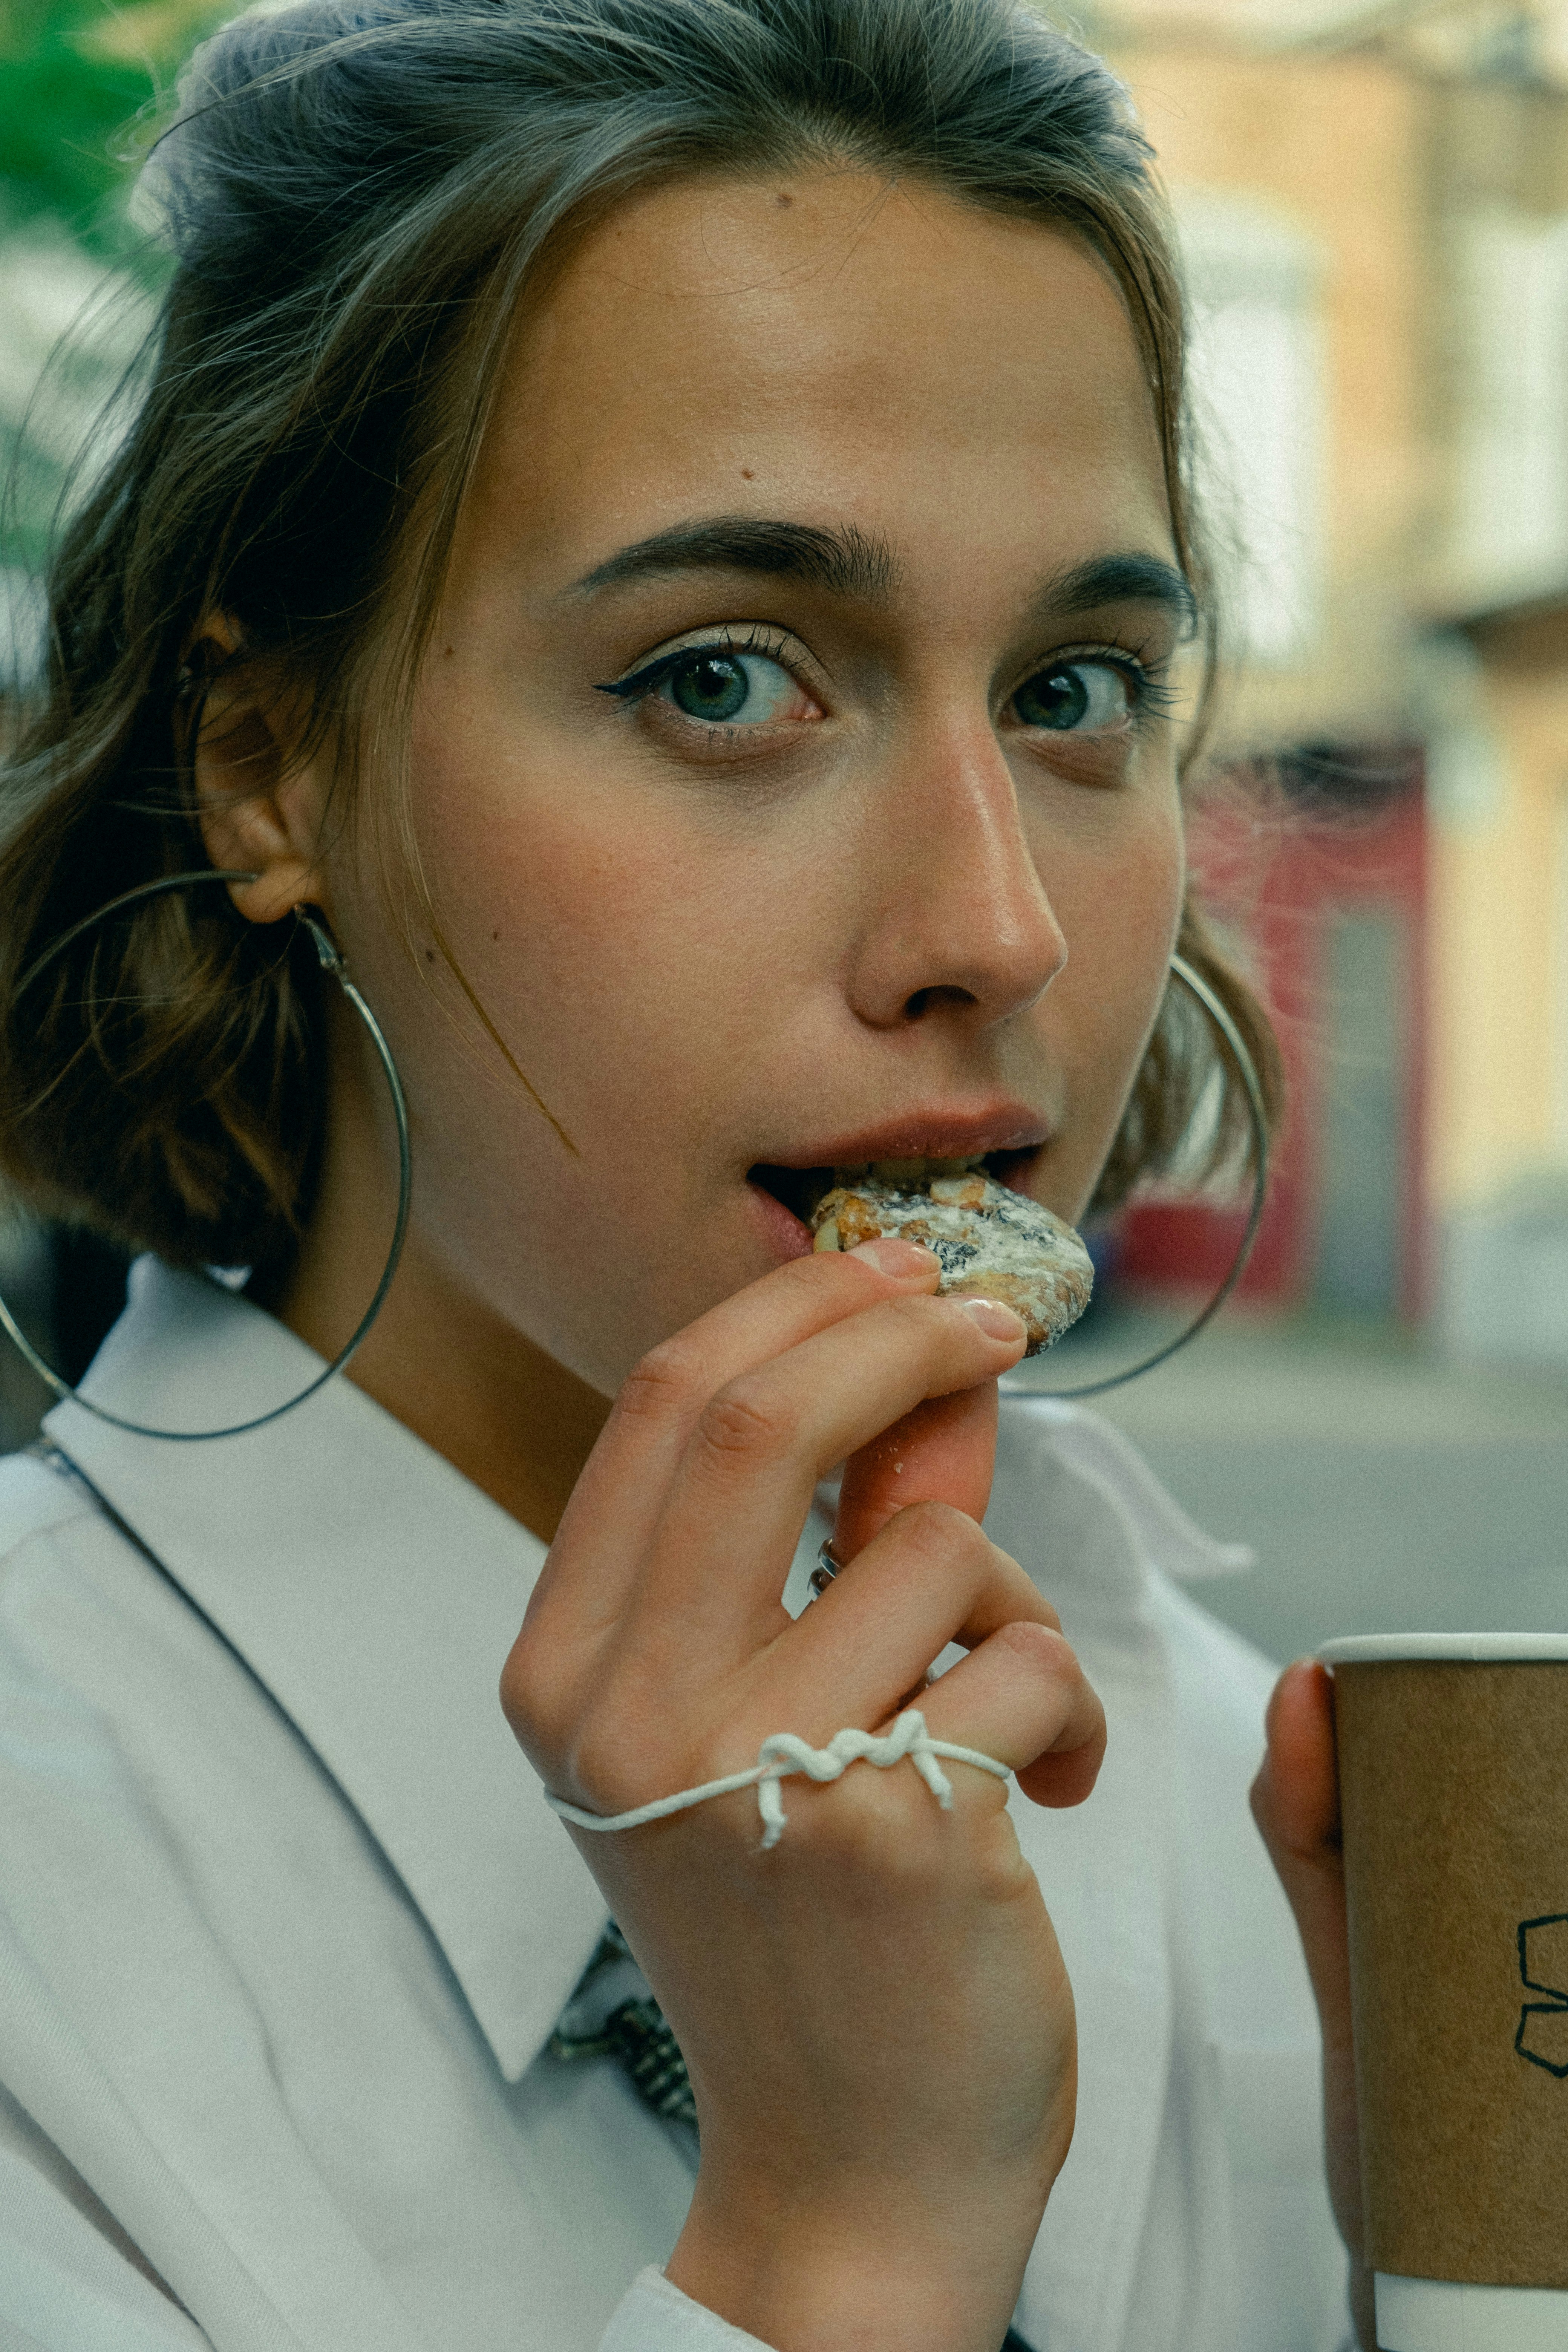 girl in white shirt eating ice cream